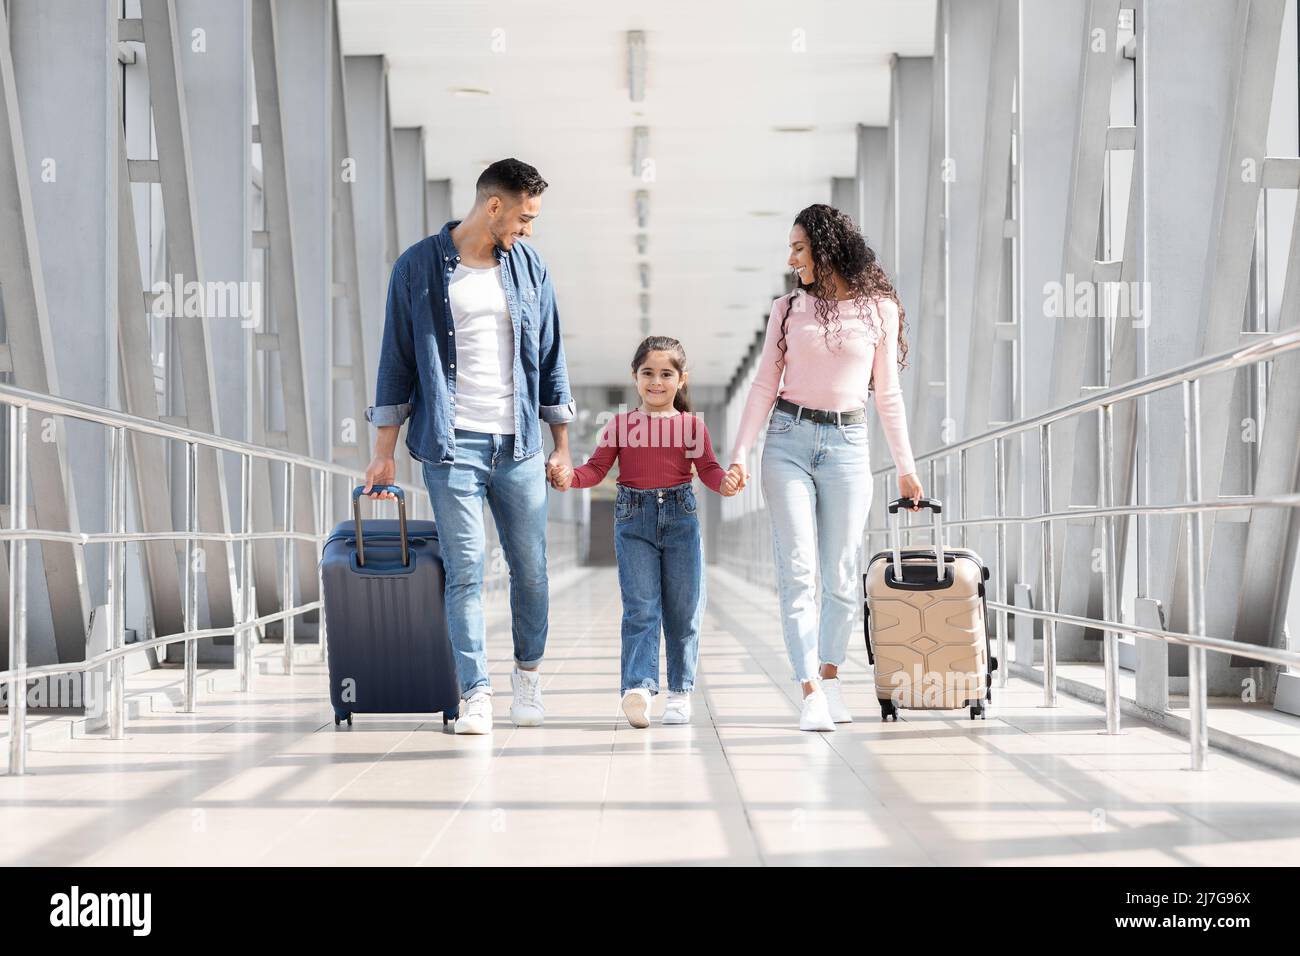 Viaggiare insieme. Gioiosa passeggiata in famiglia araba con valigie al Terminal dell'Aeroporto Foto Stock